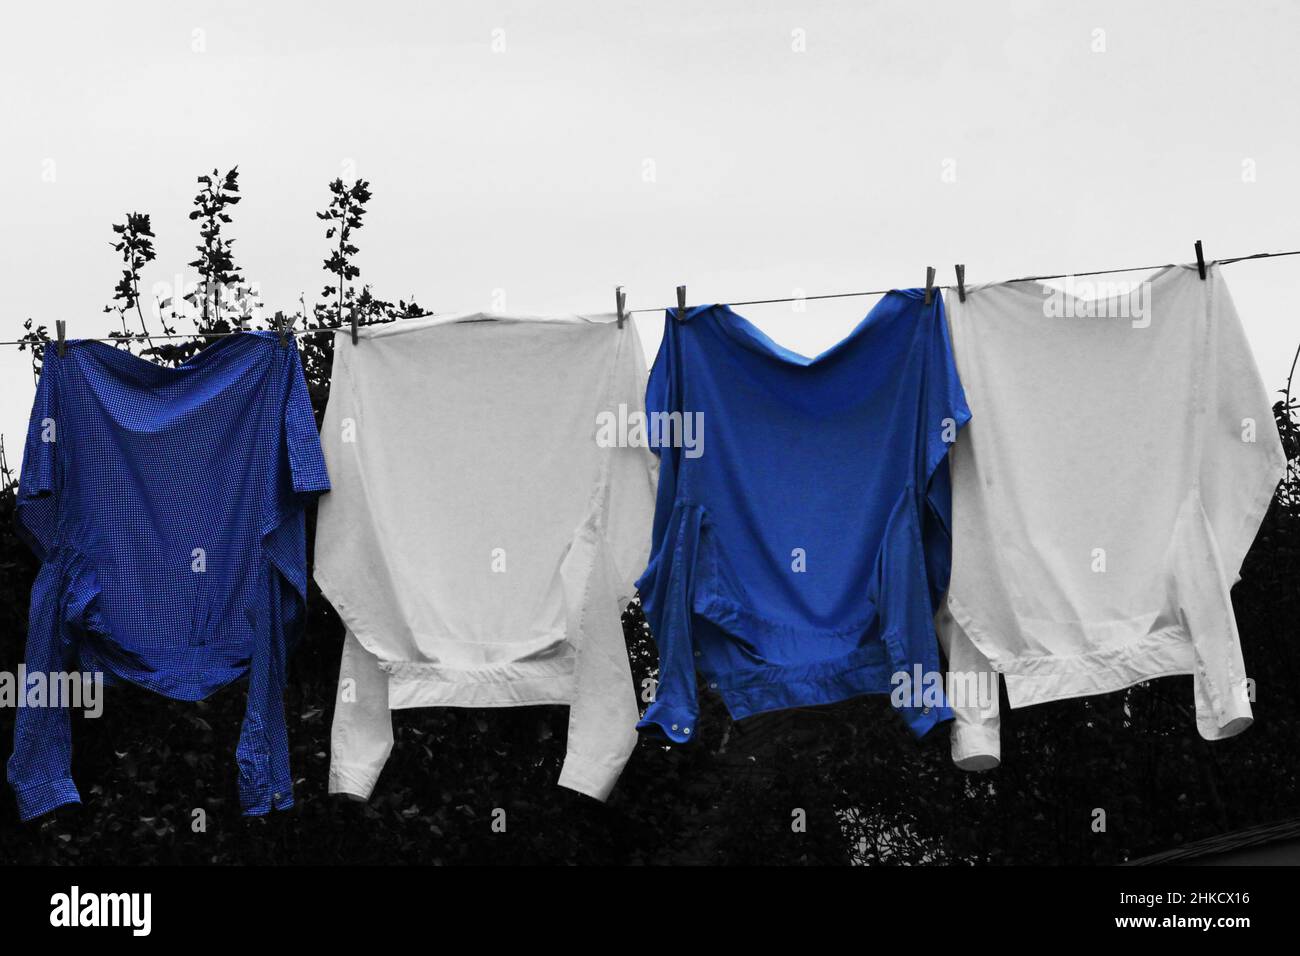 Nahaufnahme von vier Hemden auf einer Wäscheleine. Zwei blaue Hemden in Farbe, der Rest des Bildes ist Schwarz und Weiß. Stockfoto